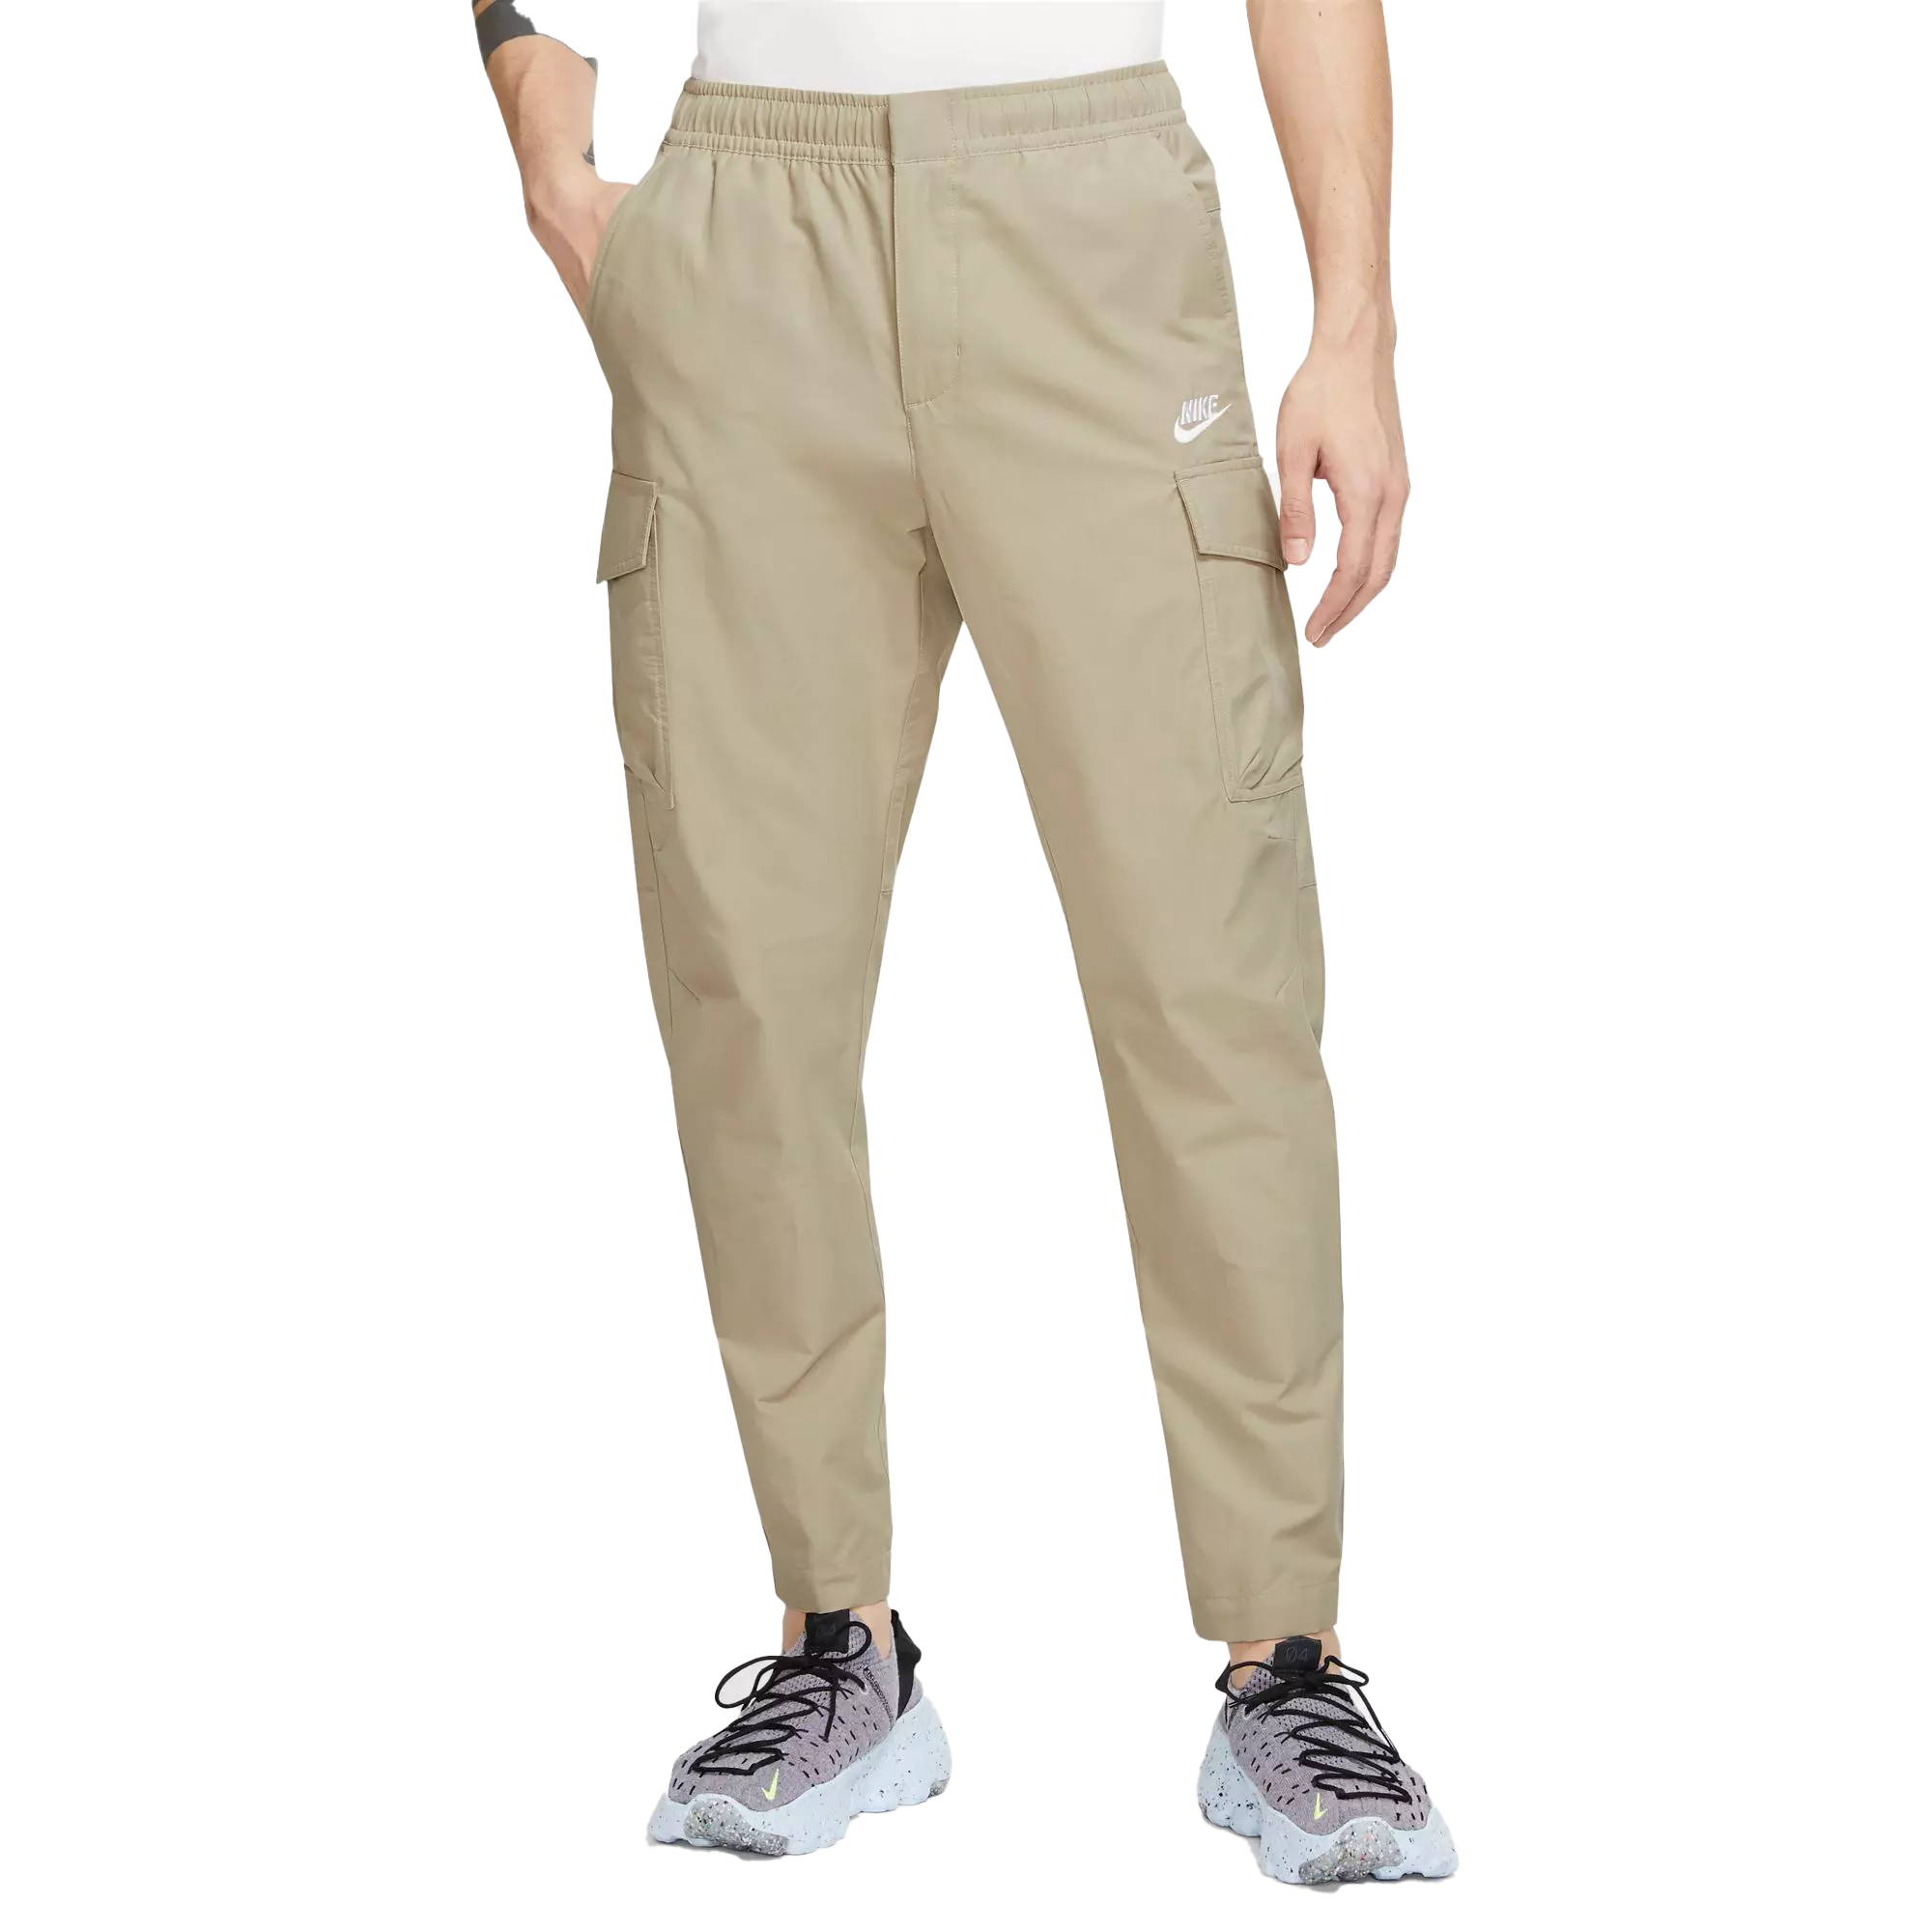 Nike Men's Sportswear Woven Unlined Utility Tan Pants